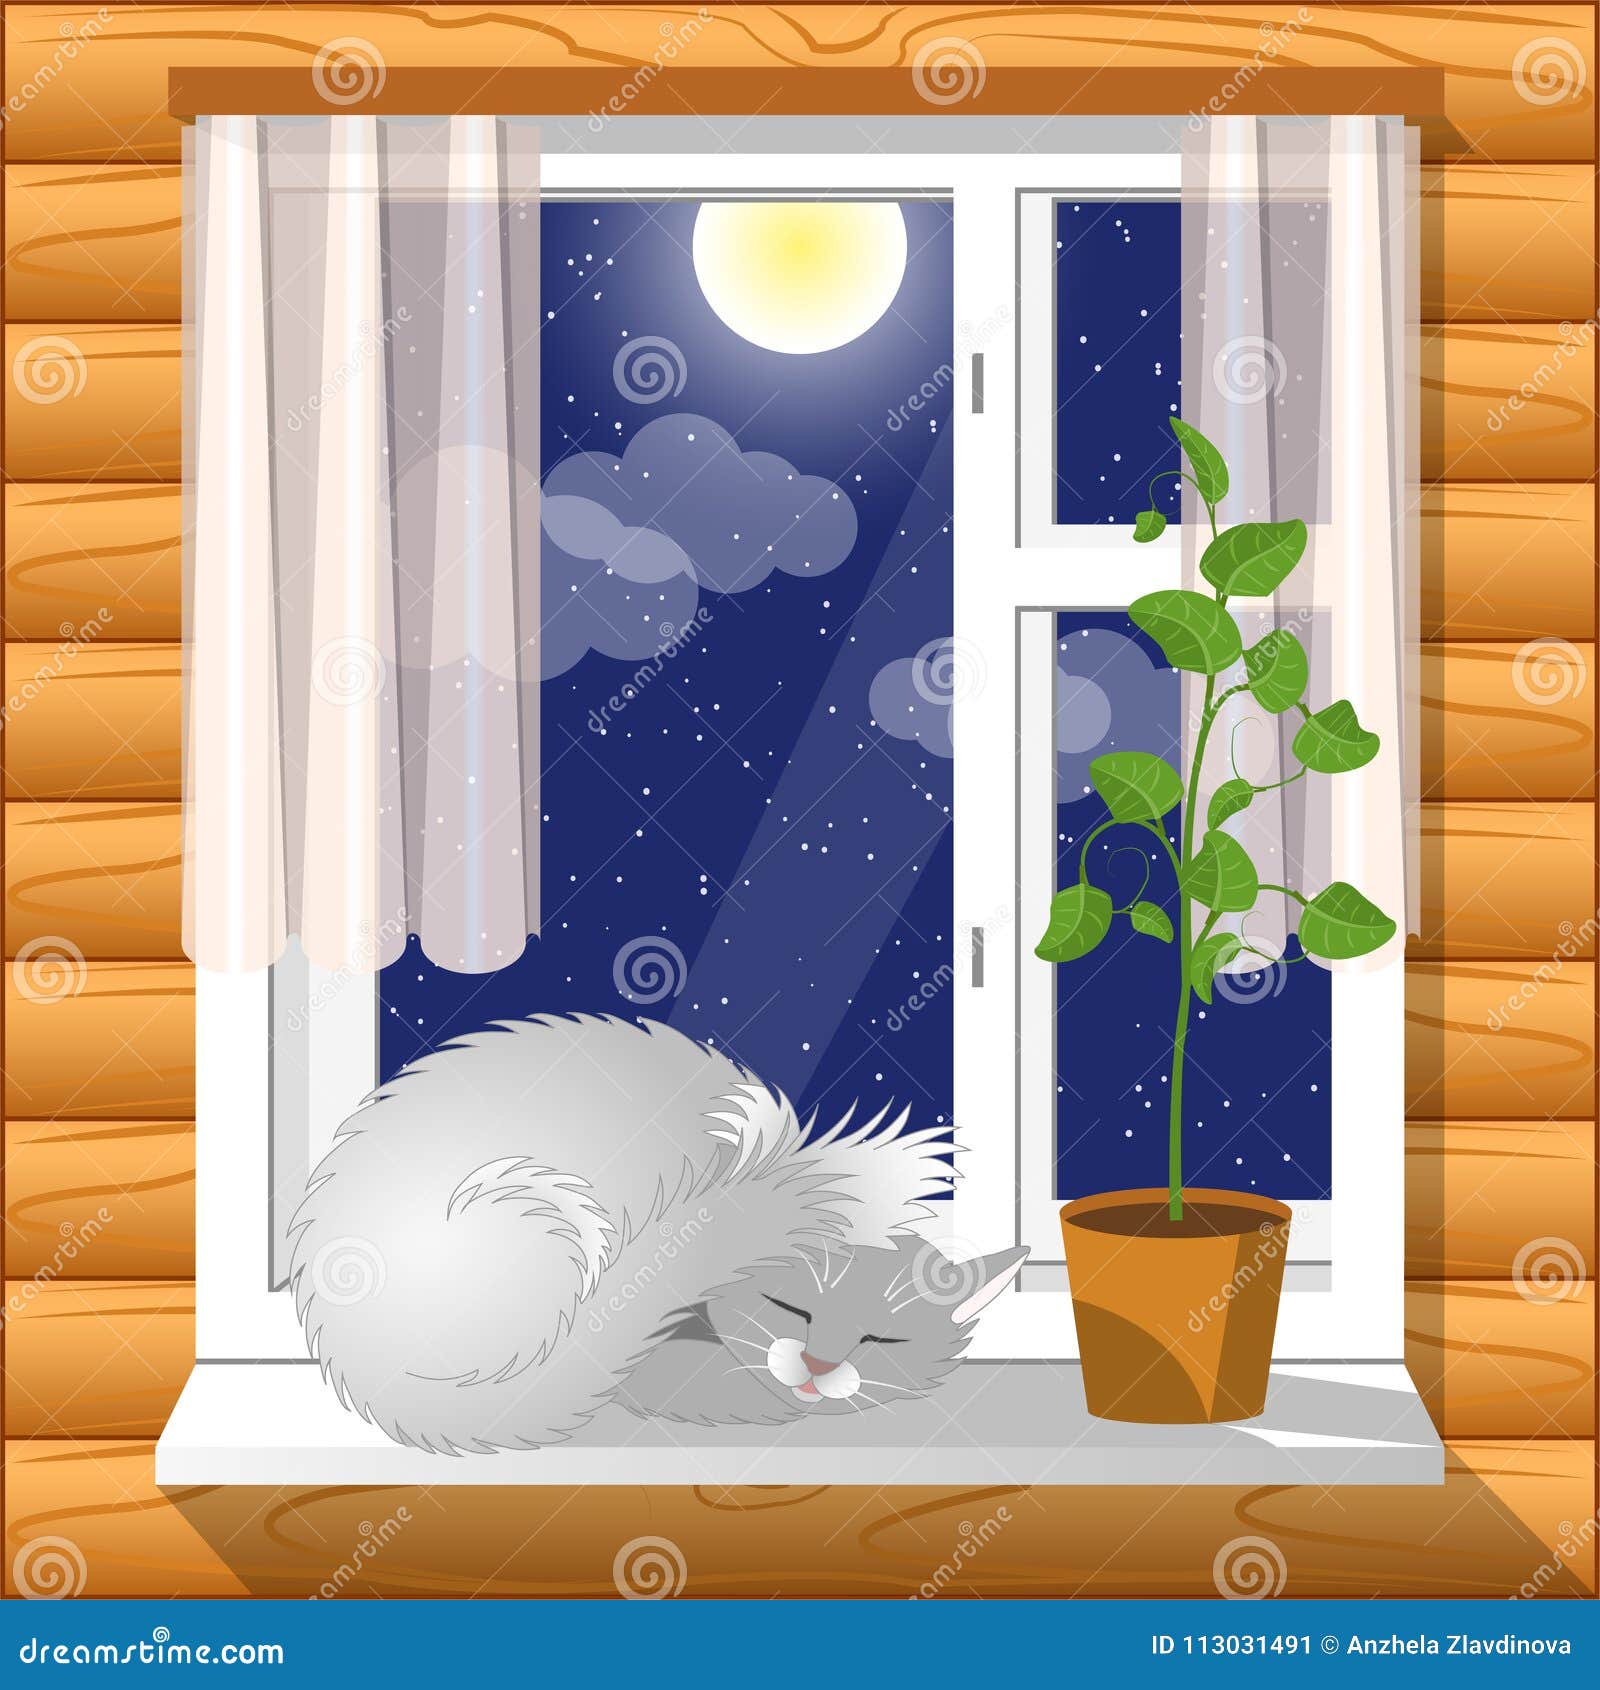 内部在窗台舒适睡觉猫向量例证 插画包括有查出 样式 月亮 空间 图象 休眠 时间